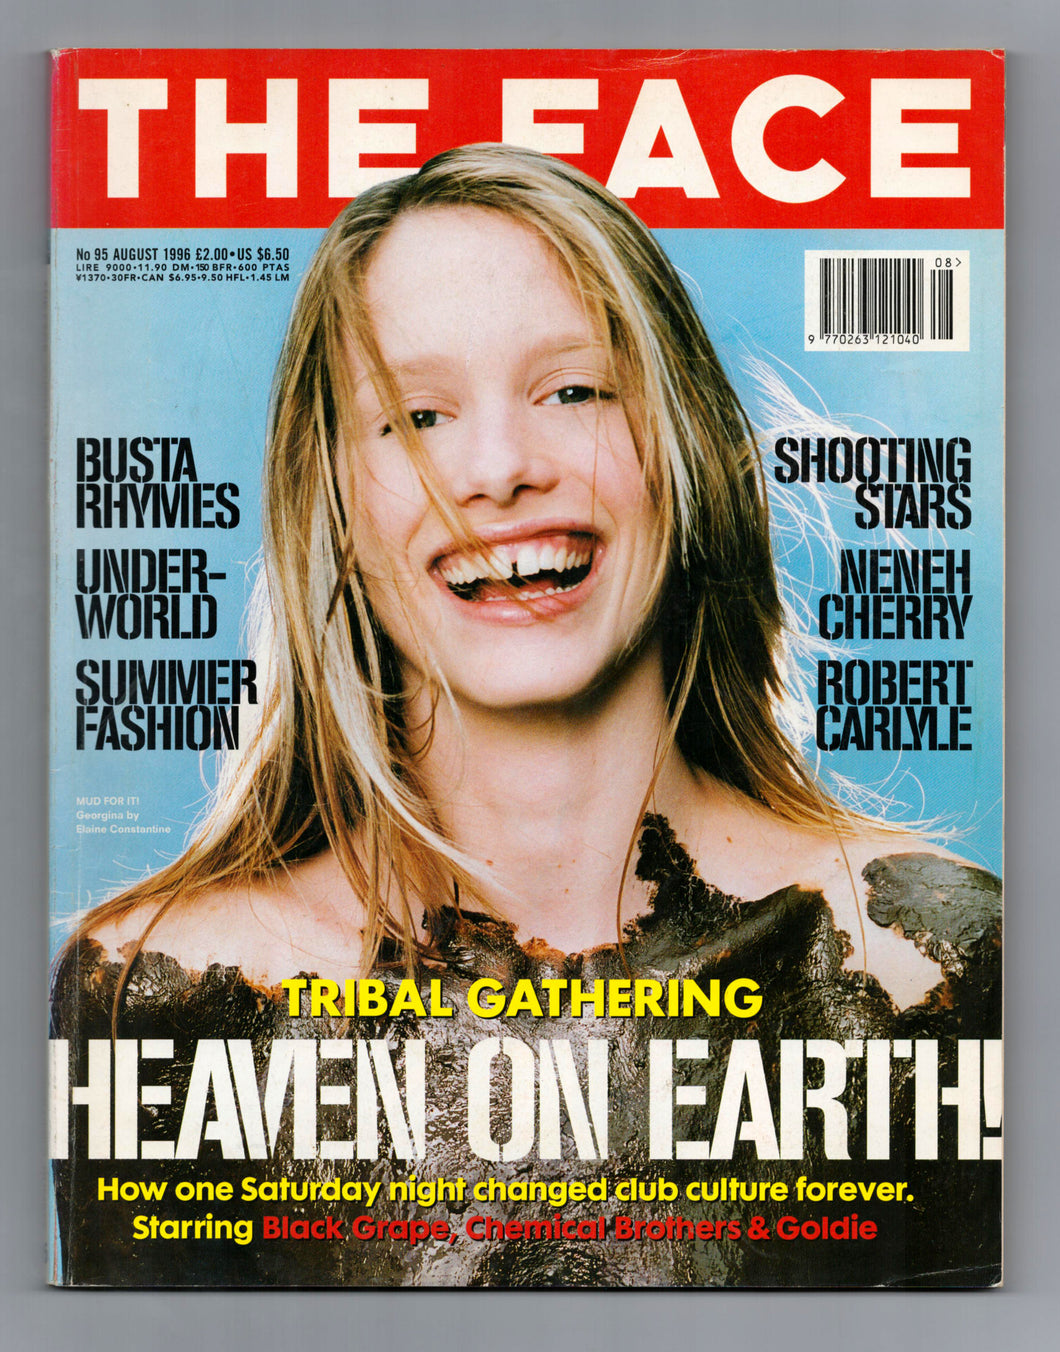 The Face Vol 2 No 95 Aug 1996